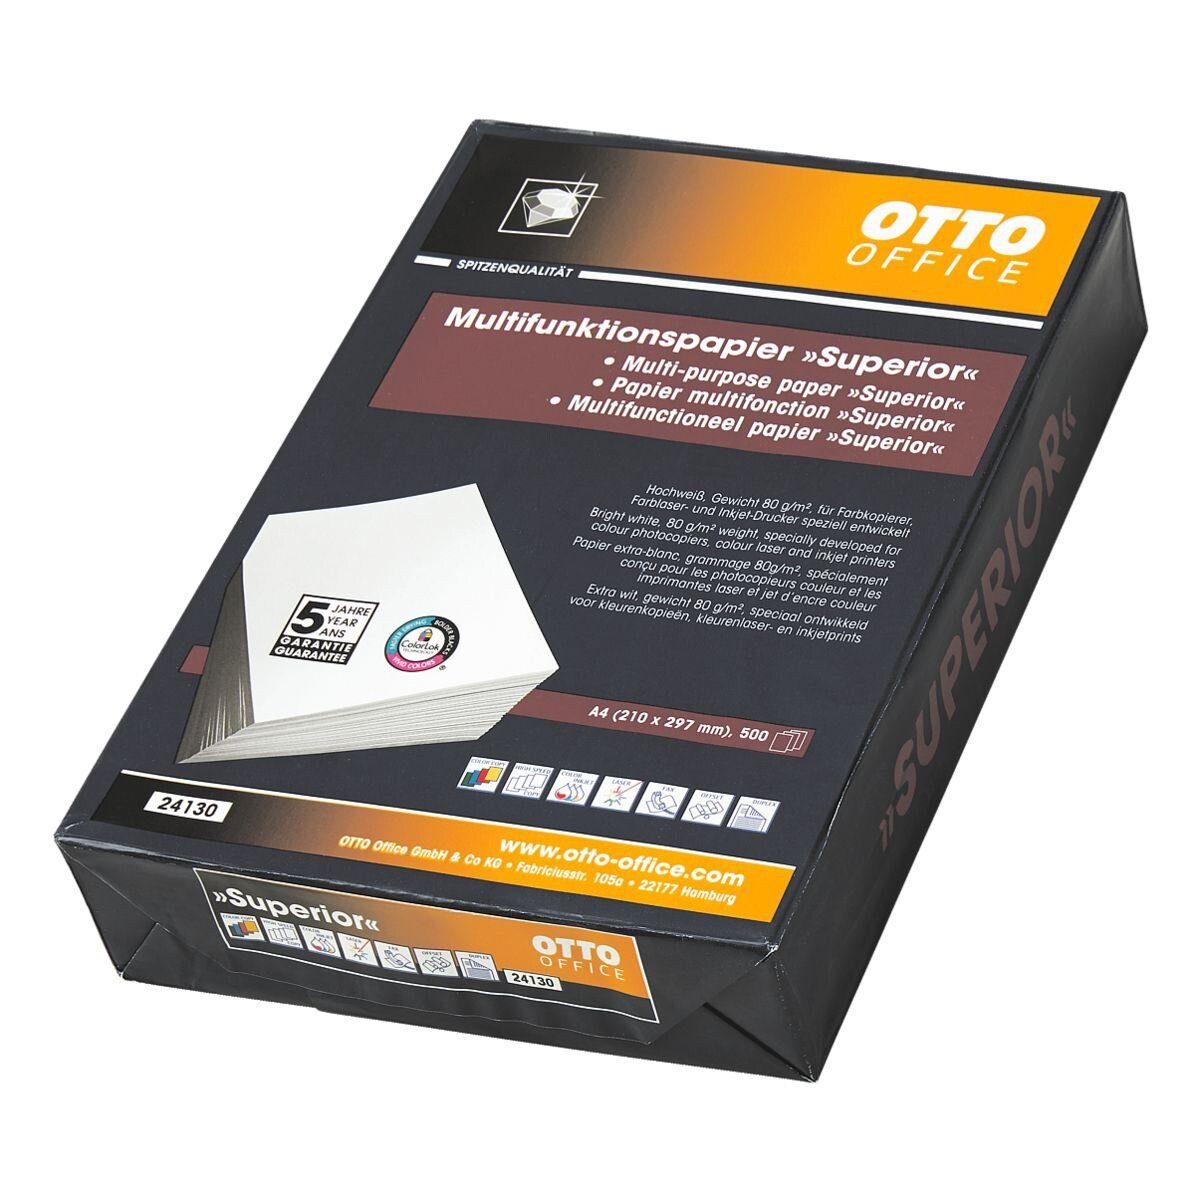 Otto Office Premium Druckerpapier Superior Format Din A4 80 G M Online Kaufen Otto